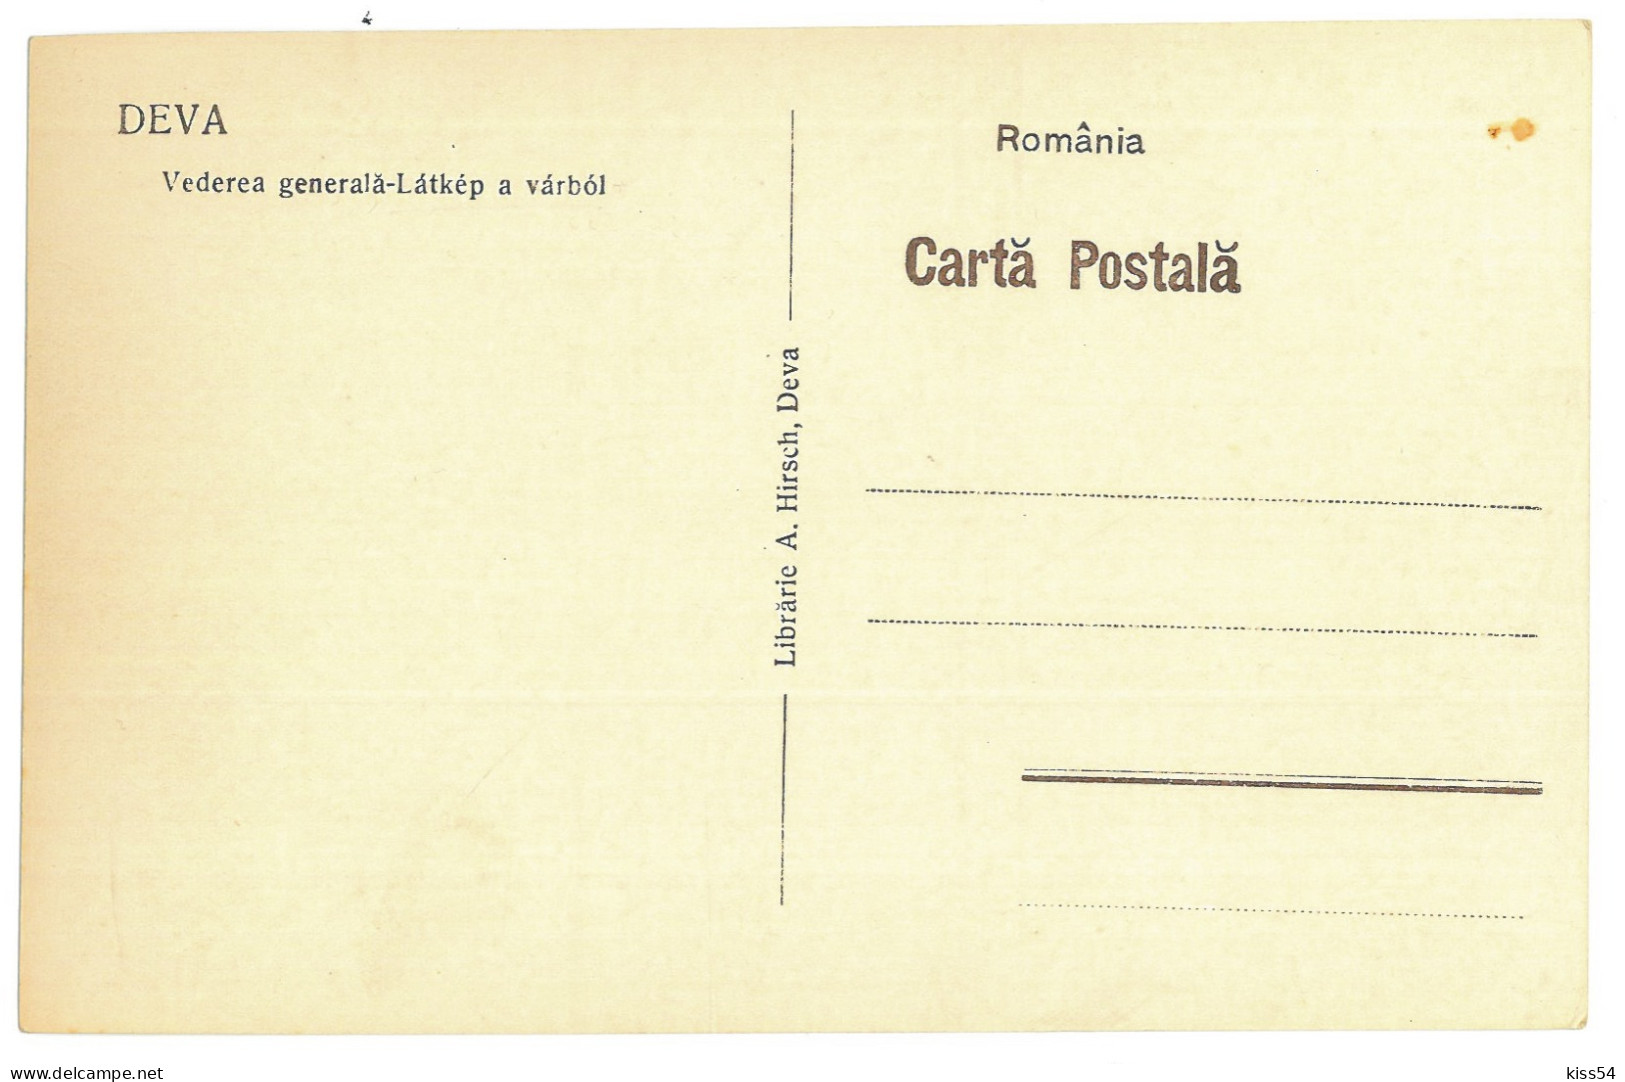 RO 36 - 22768 DEVA, Panorama, Romania - Old Postcard - Unused - Rumänien